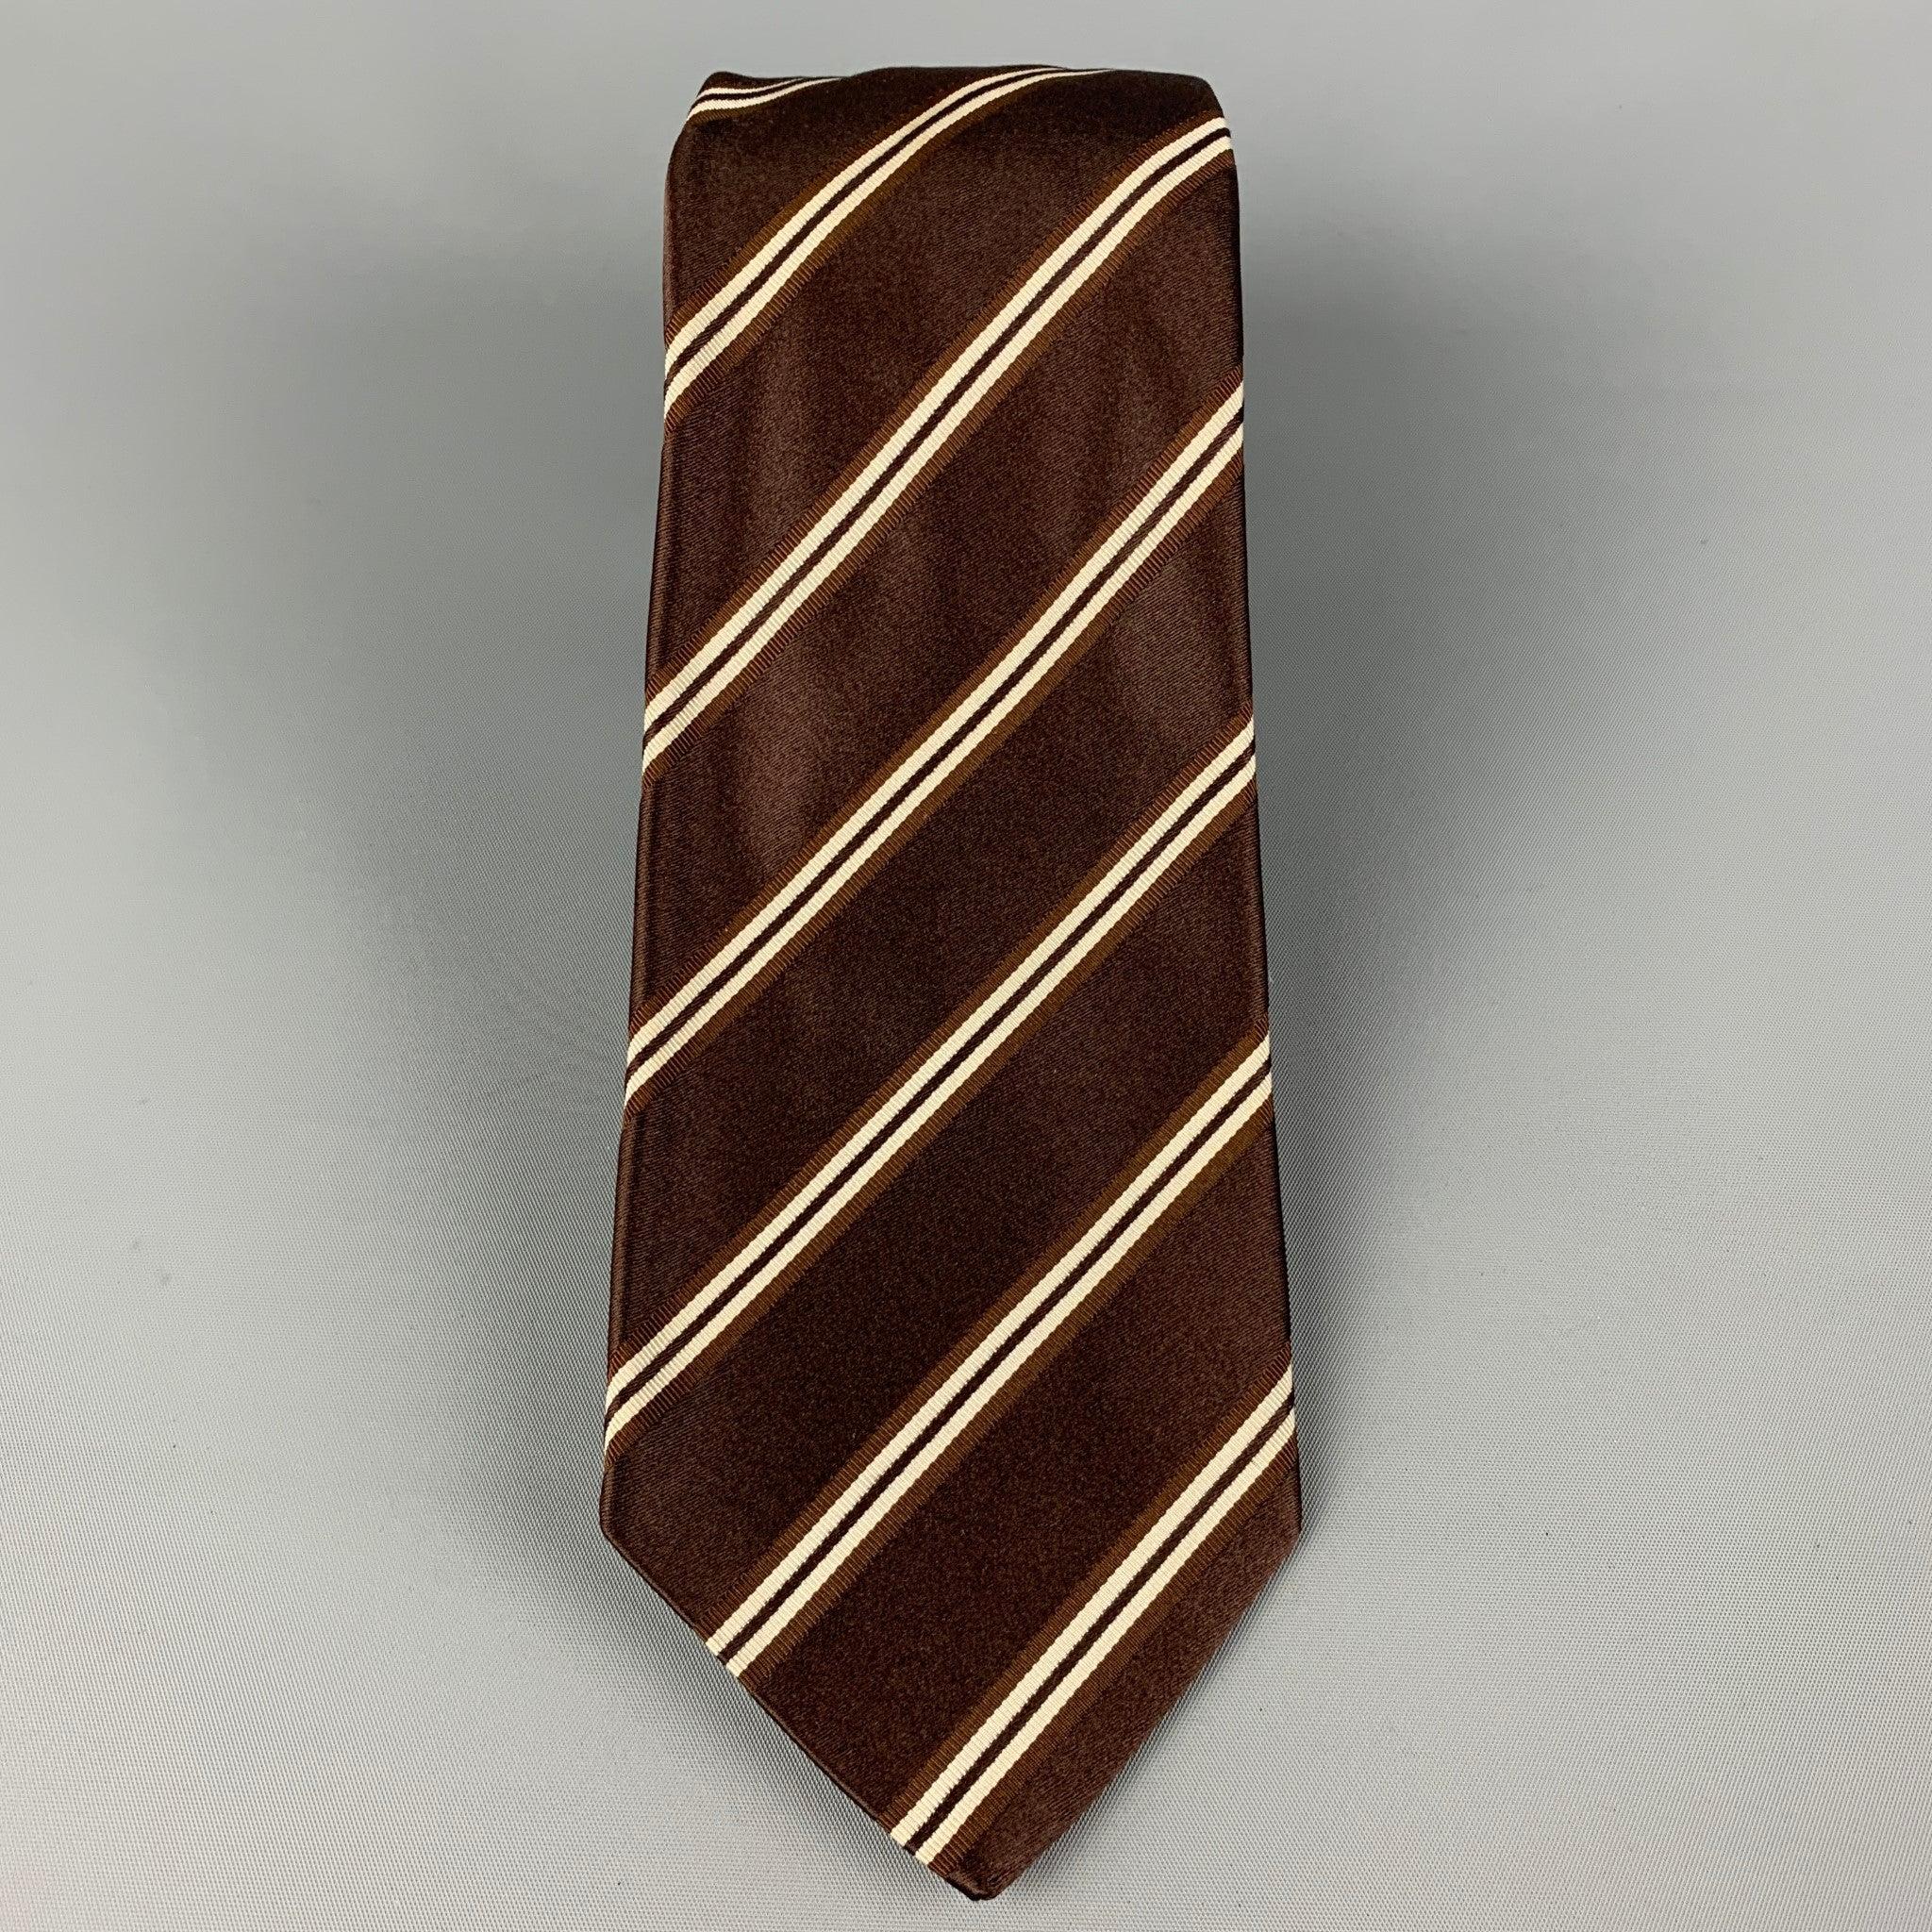 KITON Krawatte aus brauner und weißer Seide mit diagonalem Druck. Hergestellt in Italien. Sehr guter, gebrauchter Zustand, Breite: 3.75 Zoll  Länge: 60 Zoll 

  
  
 
Sui Generis-Referenz: 120363
Kategorie: Krawatte
Mehr Details
    
Marke: 